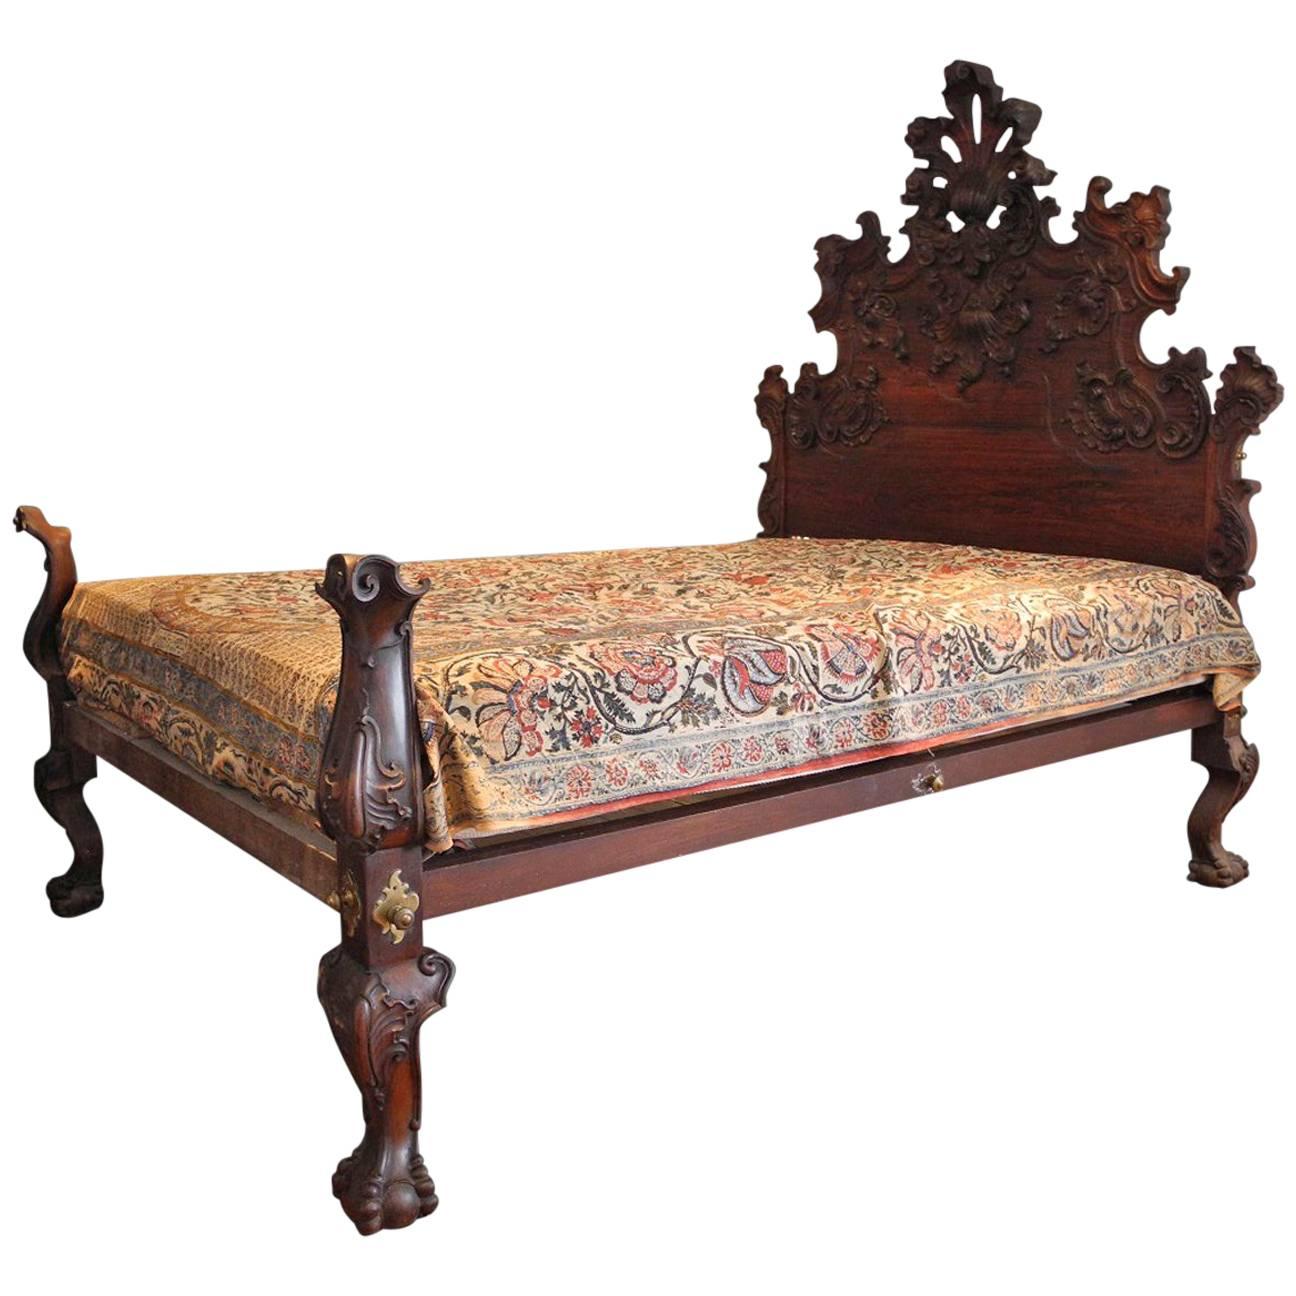 Rare Mid-18th Century Indo Portuguesse Bed For Sale